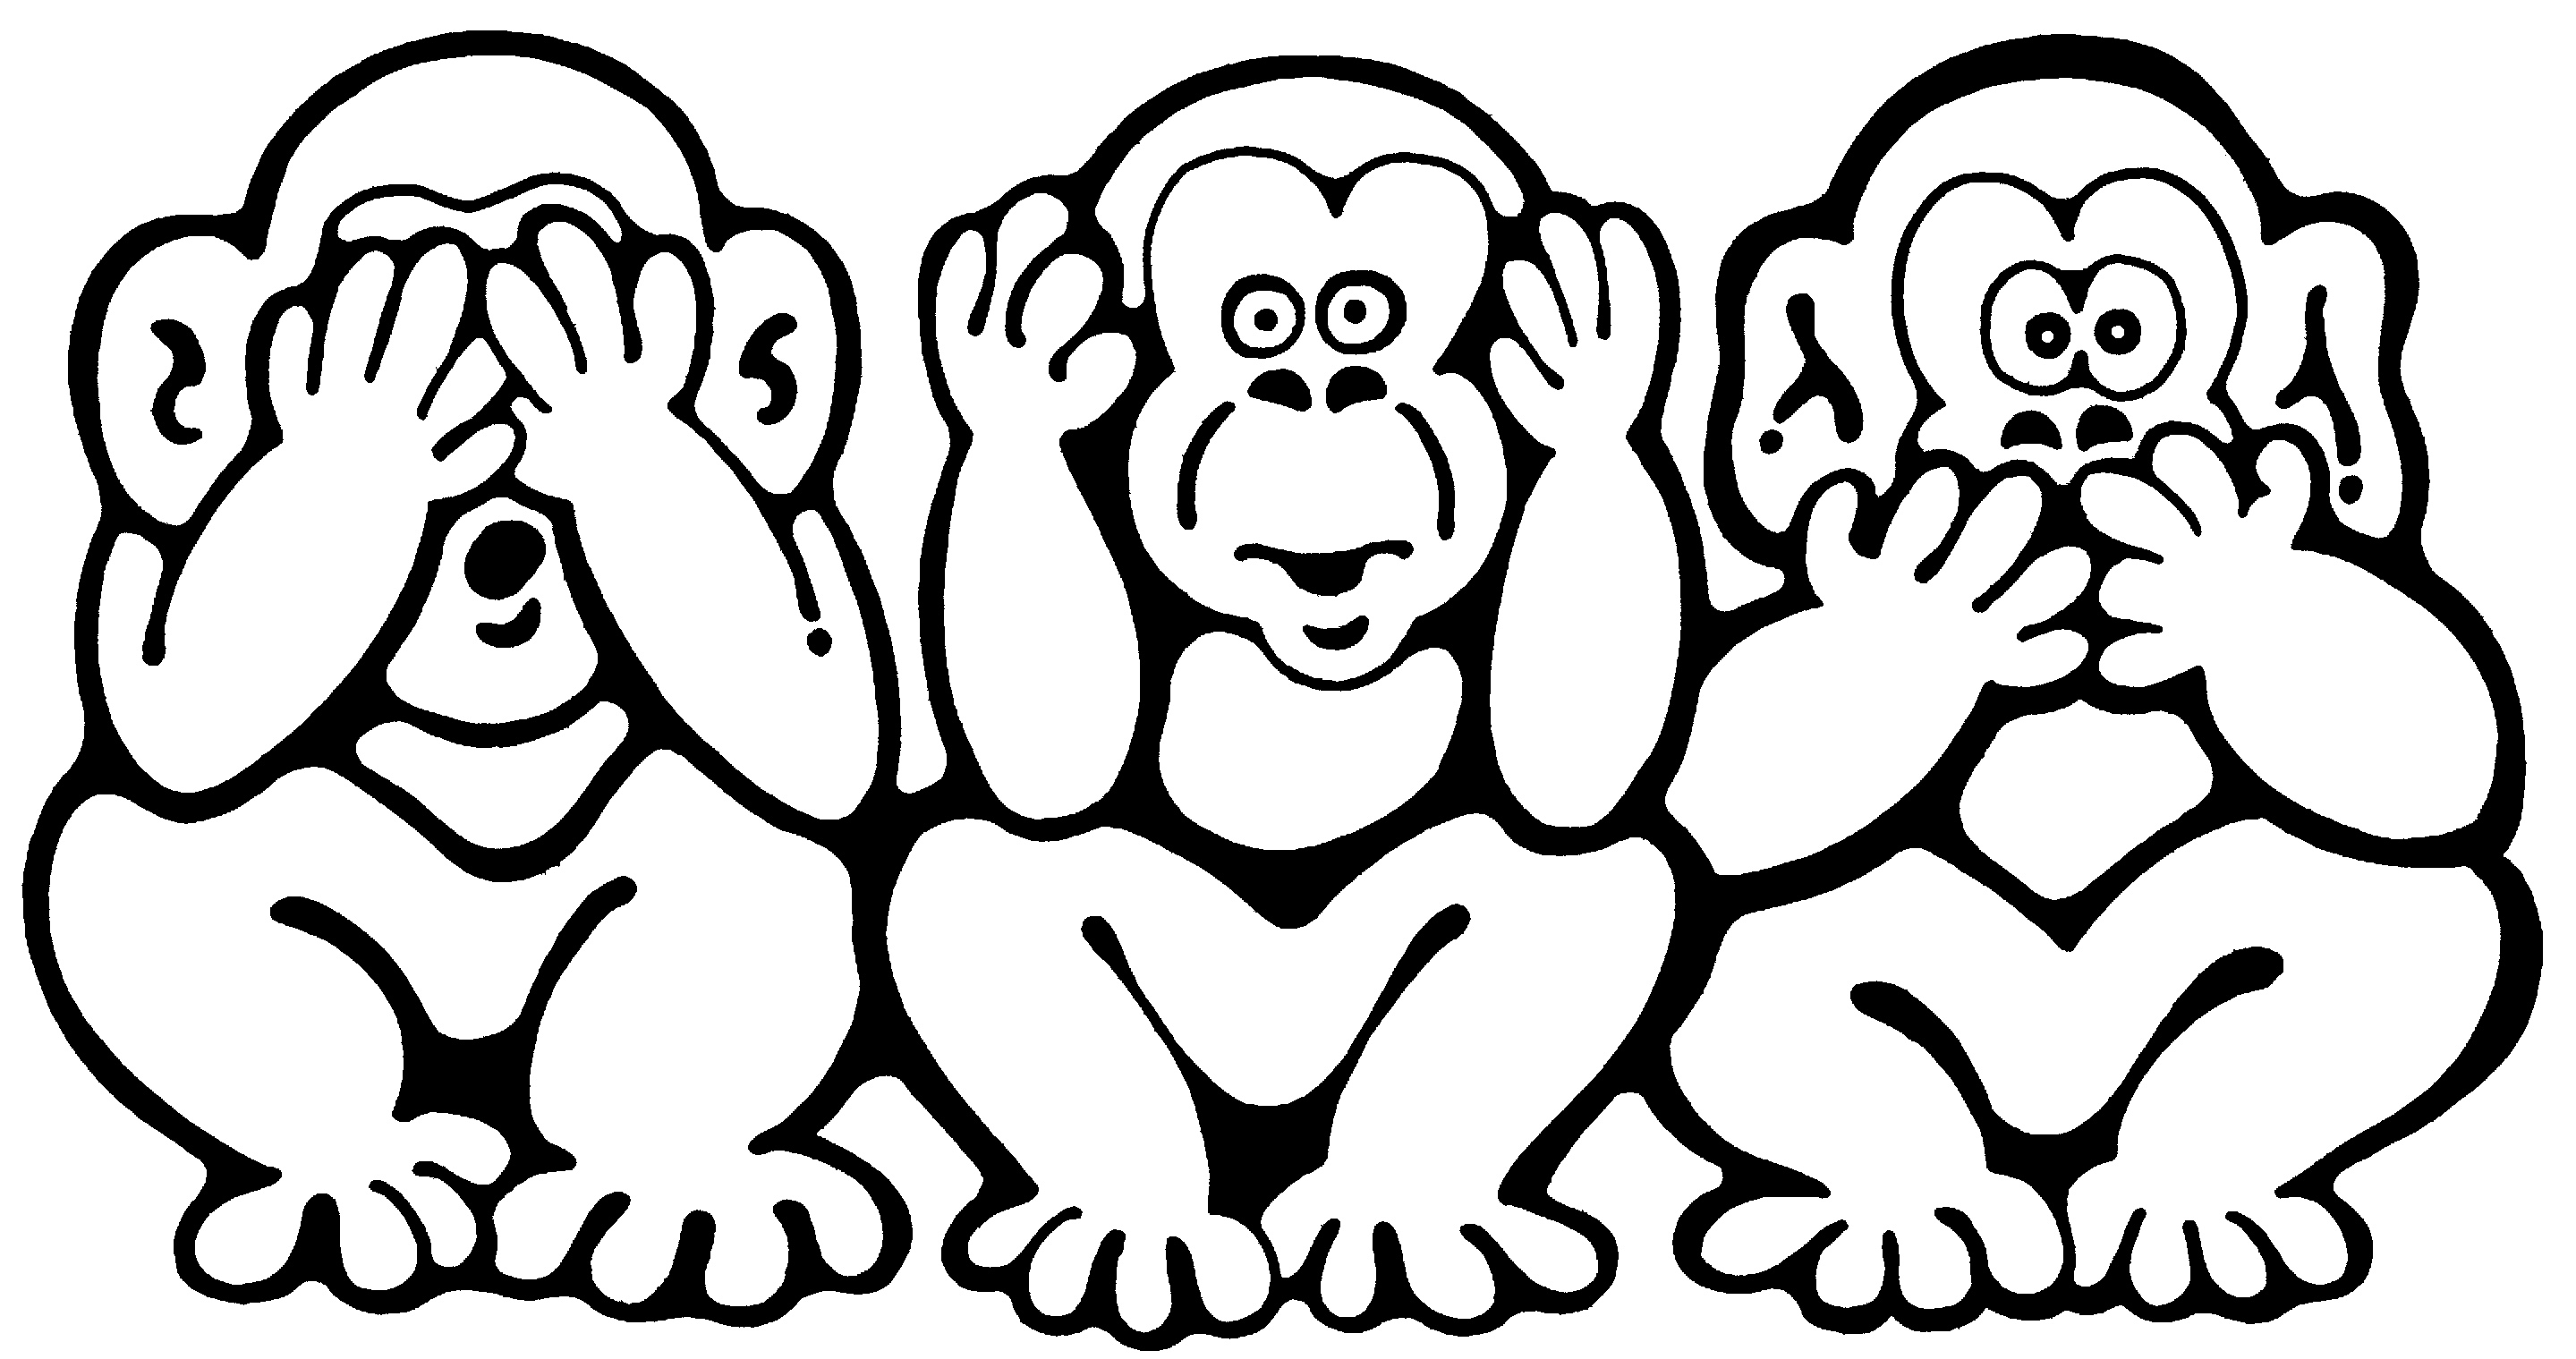 Символу трёх обезьянок